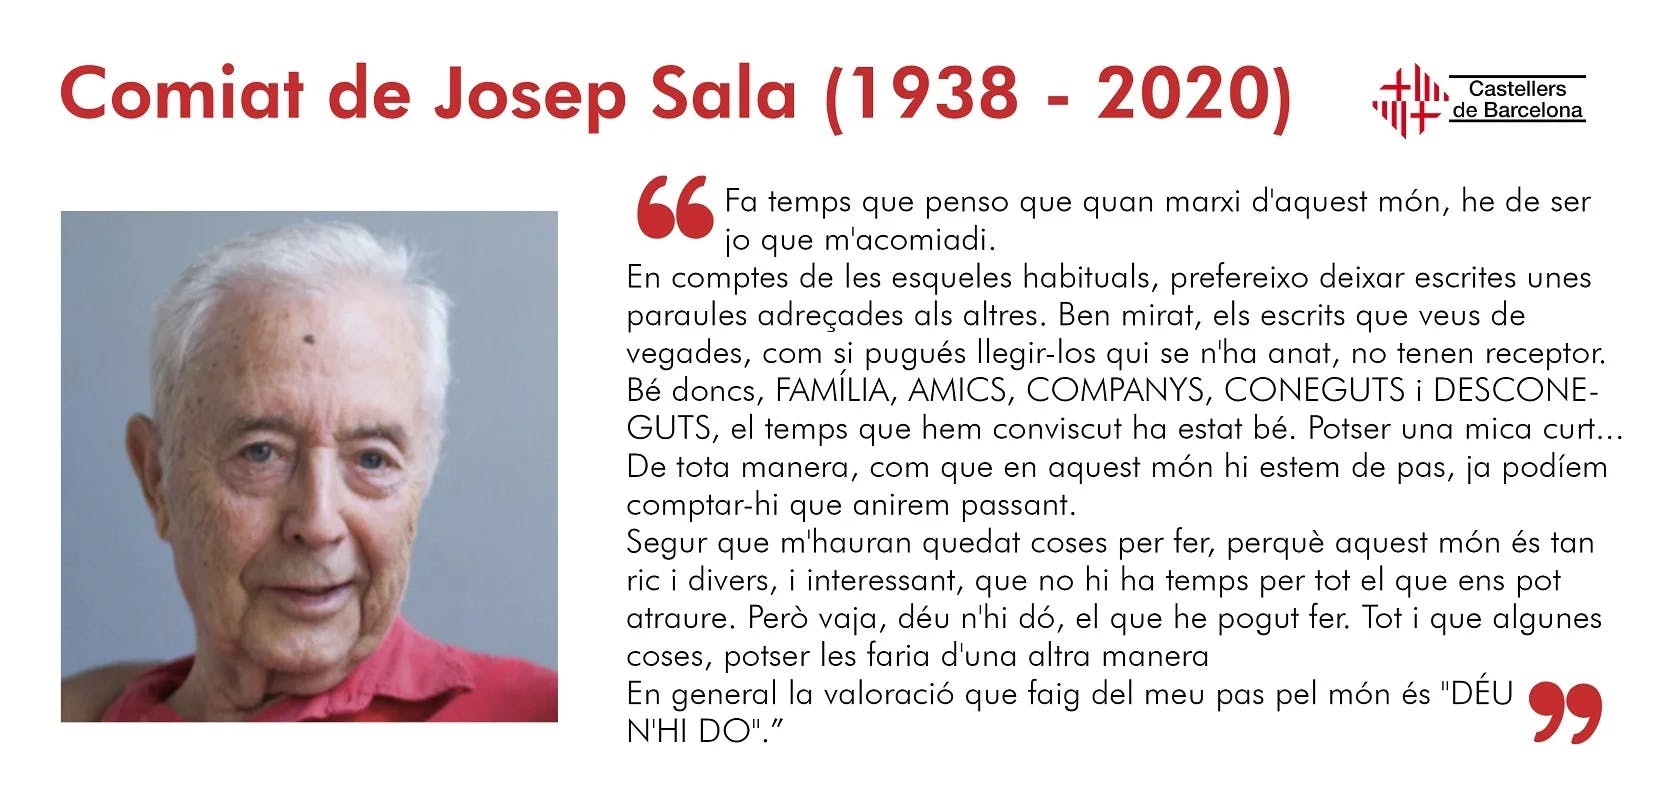 Mor Josep Sala i Mañé, fundador dels Castellers de Barcelona